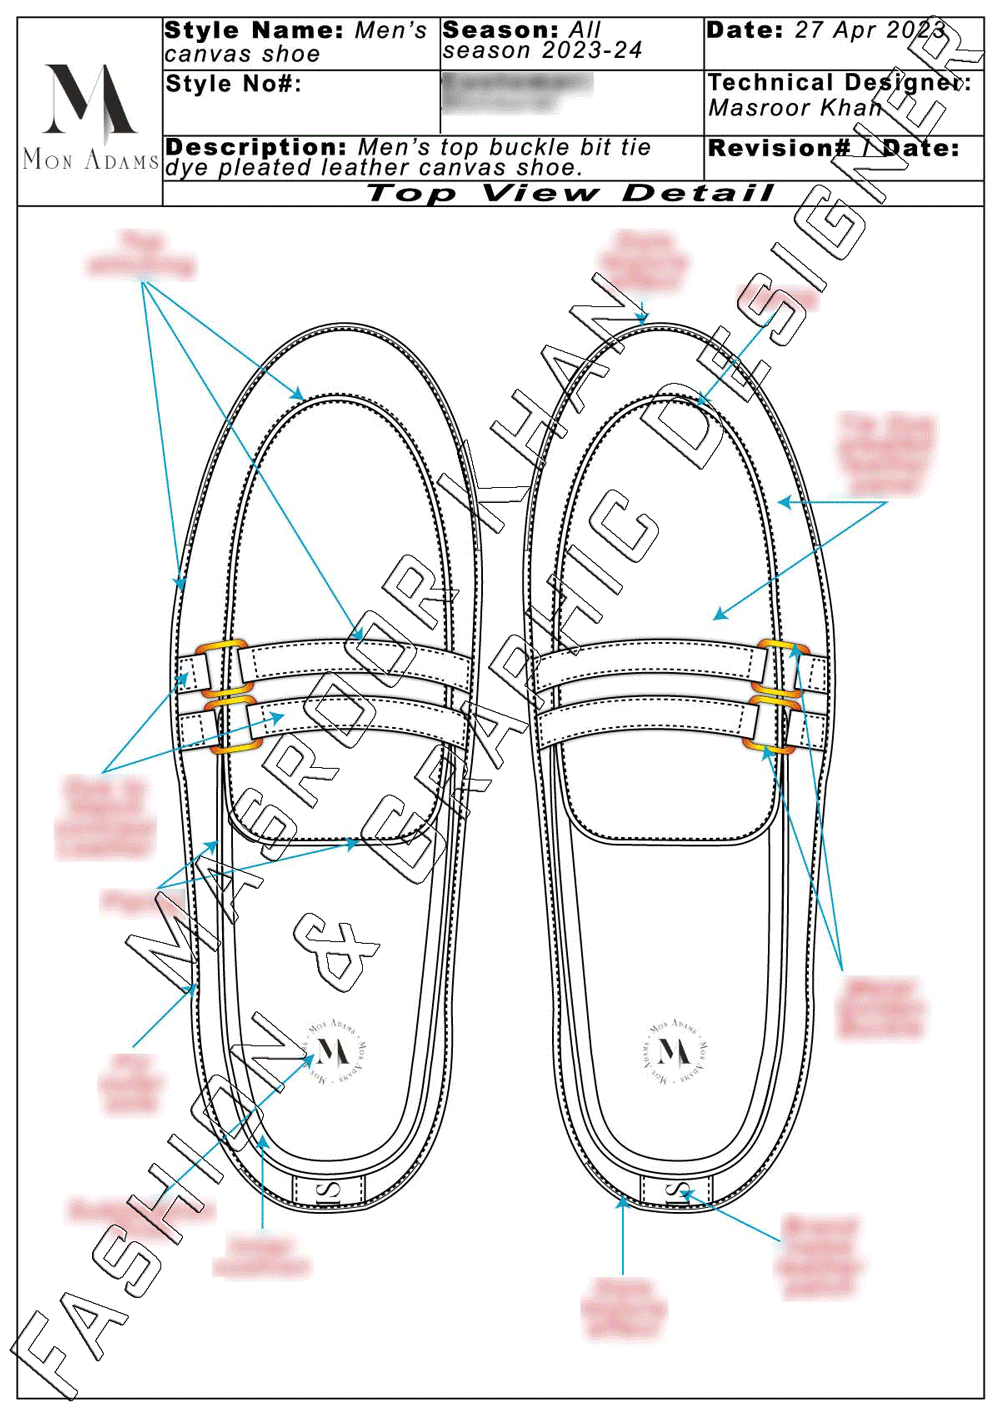 Men's Buckle Bit Canvas Shoe Design .gif image